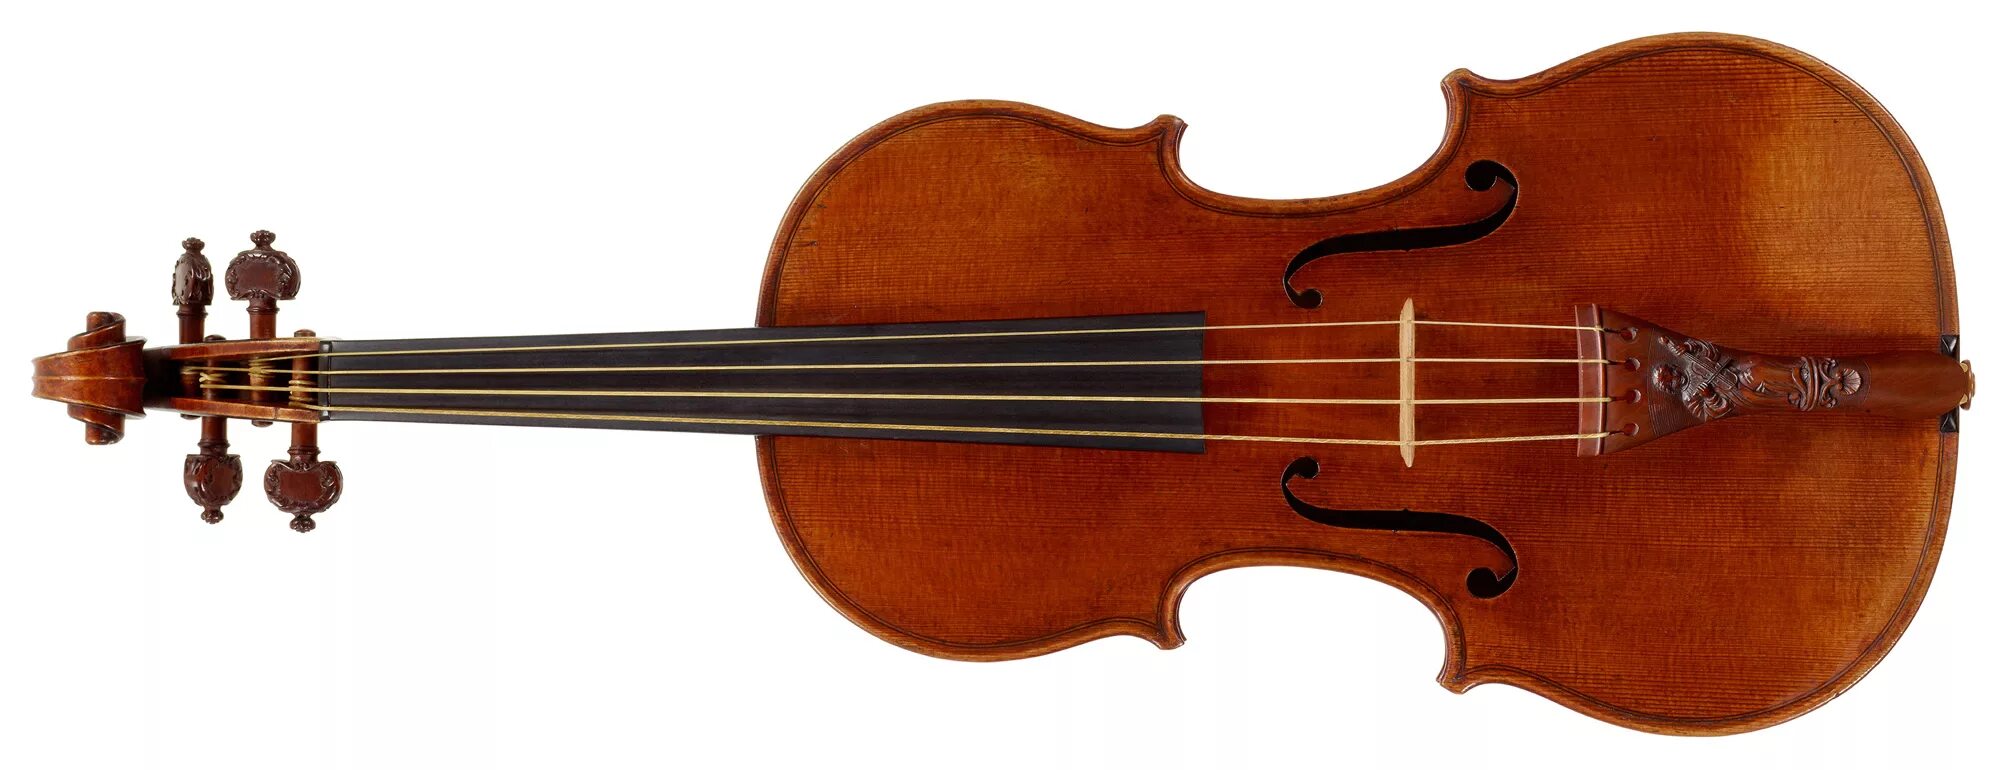 Скрипки Николо Амати. Brahner BC-11 виолончель 4/4. Виолончель Brahner BC-11.. Скрипка род